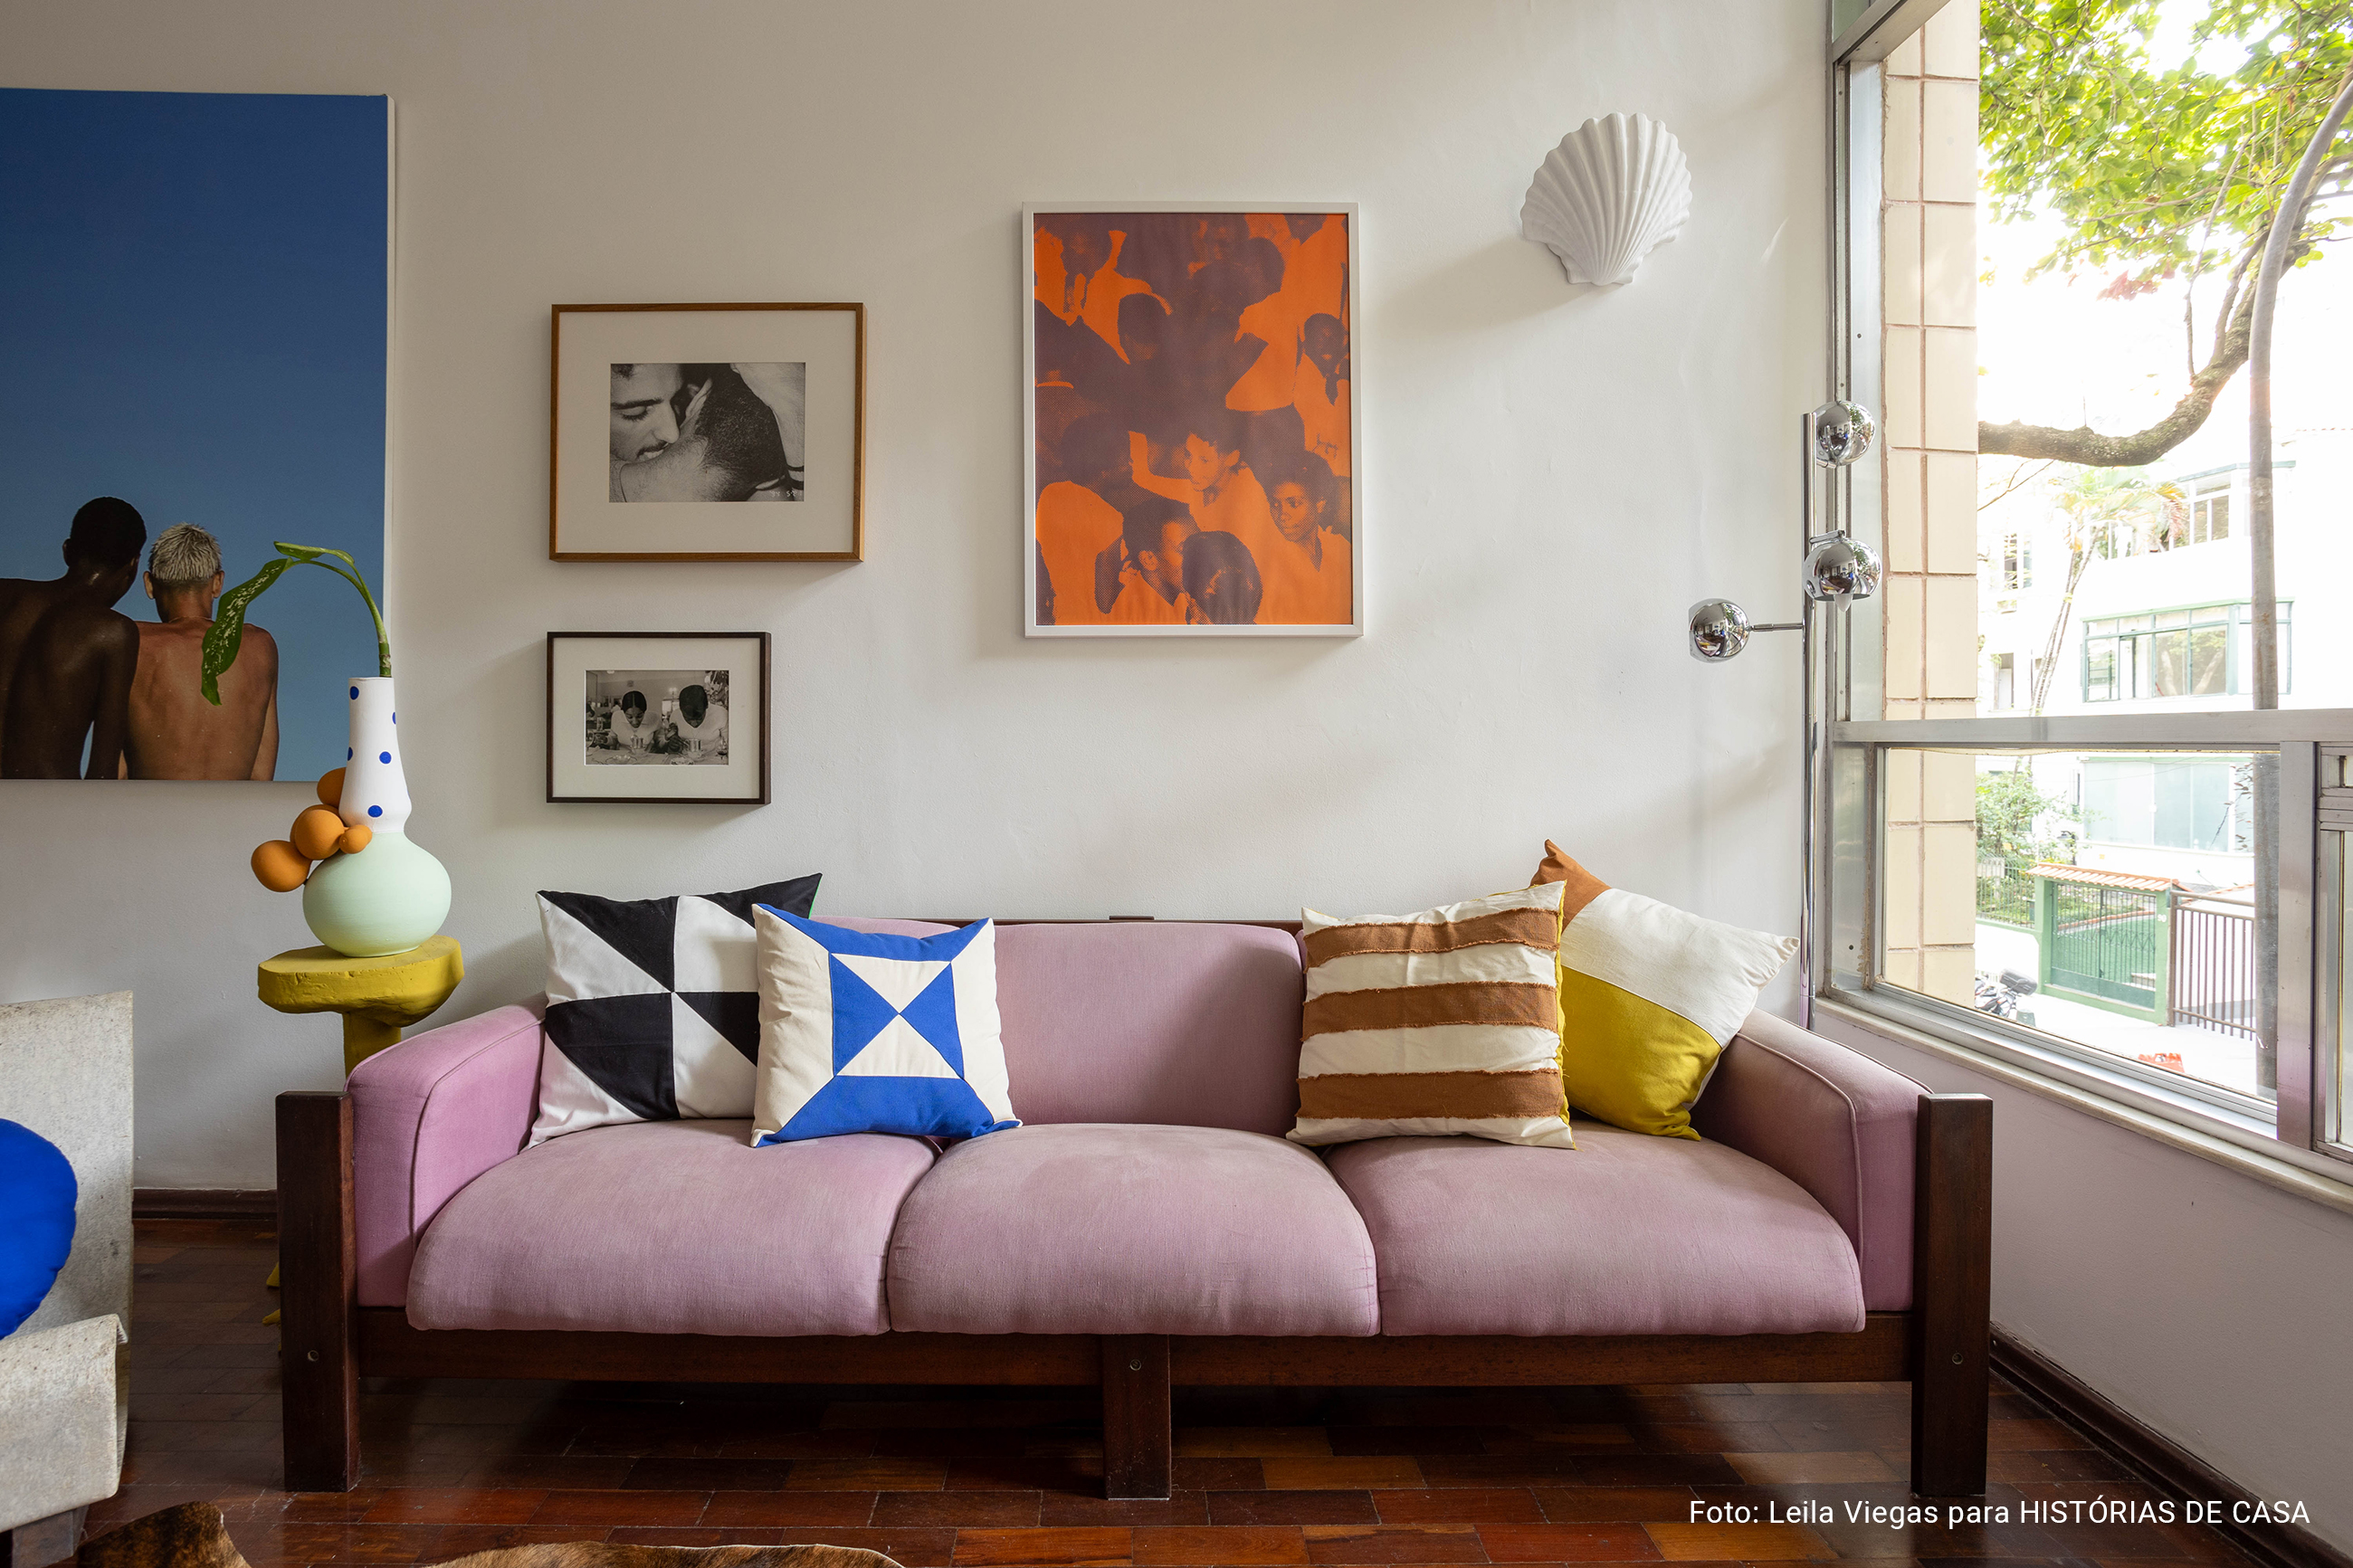 Apartamento com decoração autêntica, arte e detalhes coloridos. Rafael Gomes.